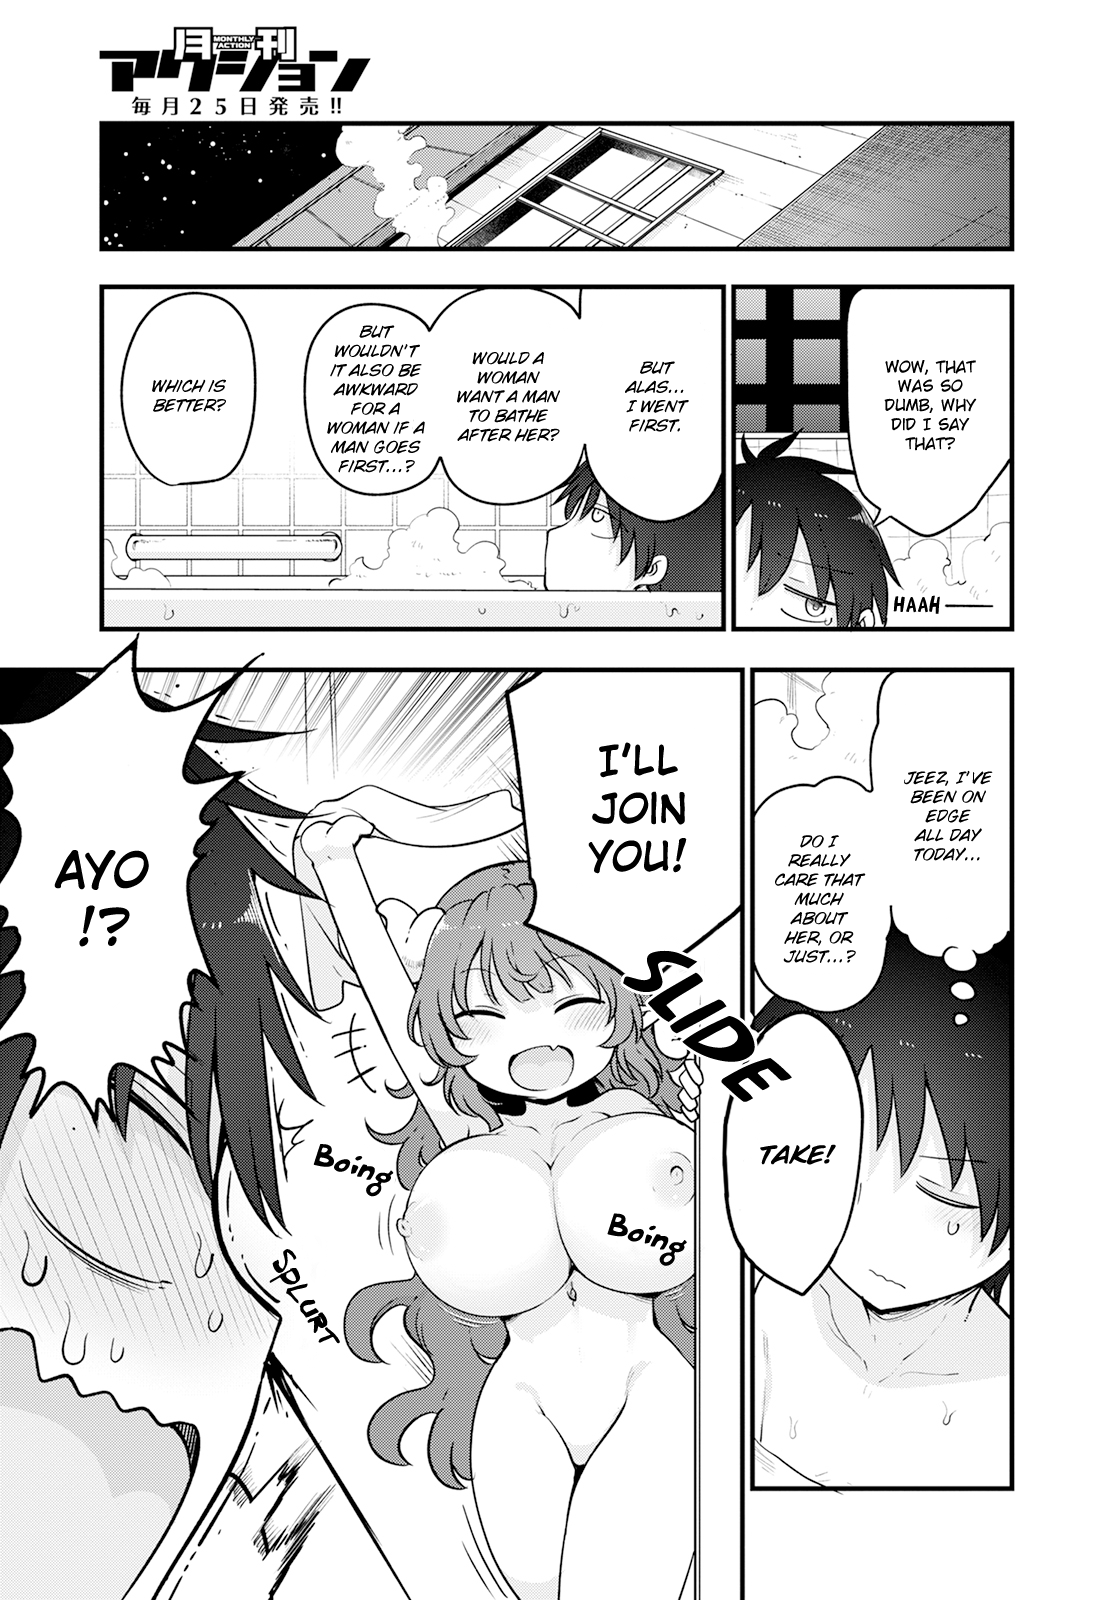  Miss Kobayashi's Dragon Maid Manga